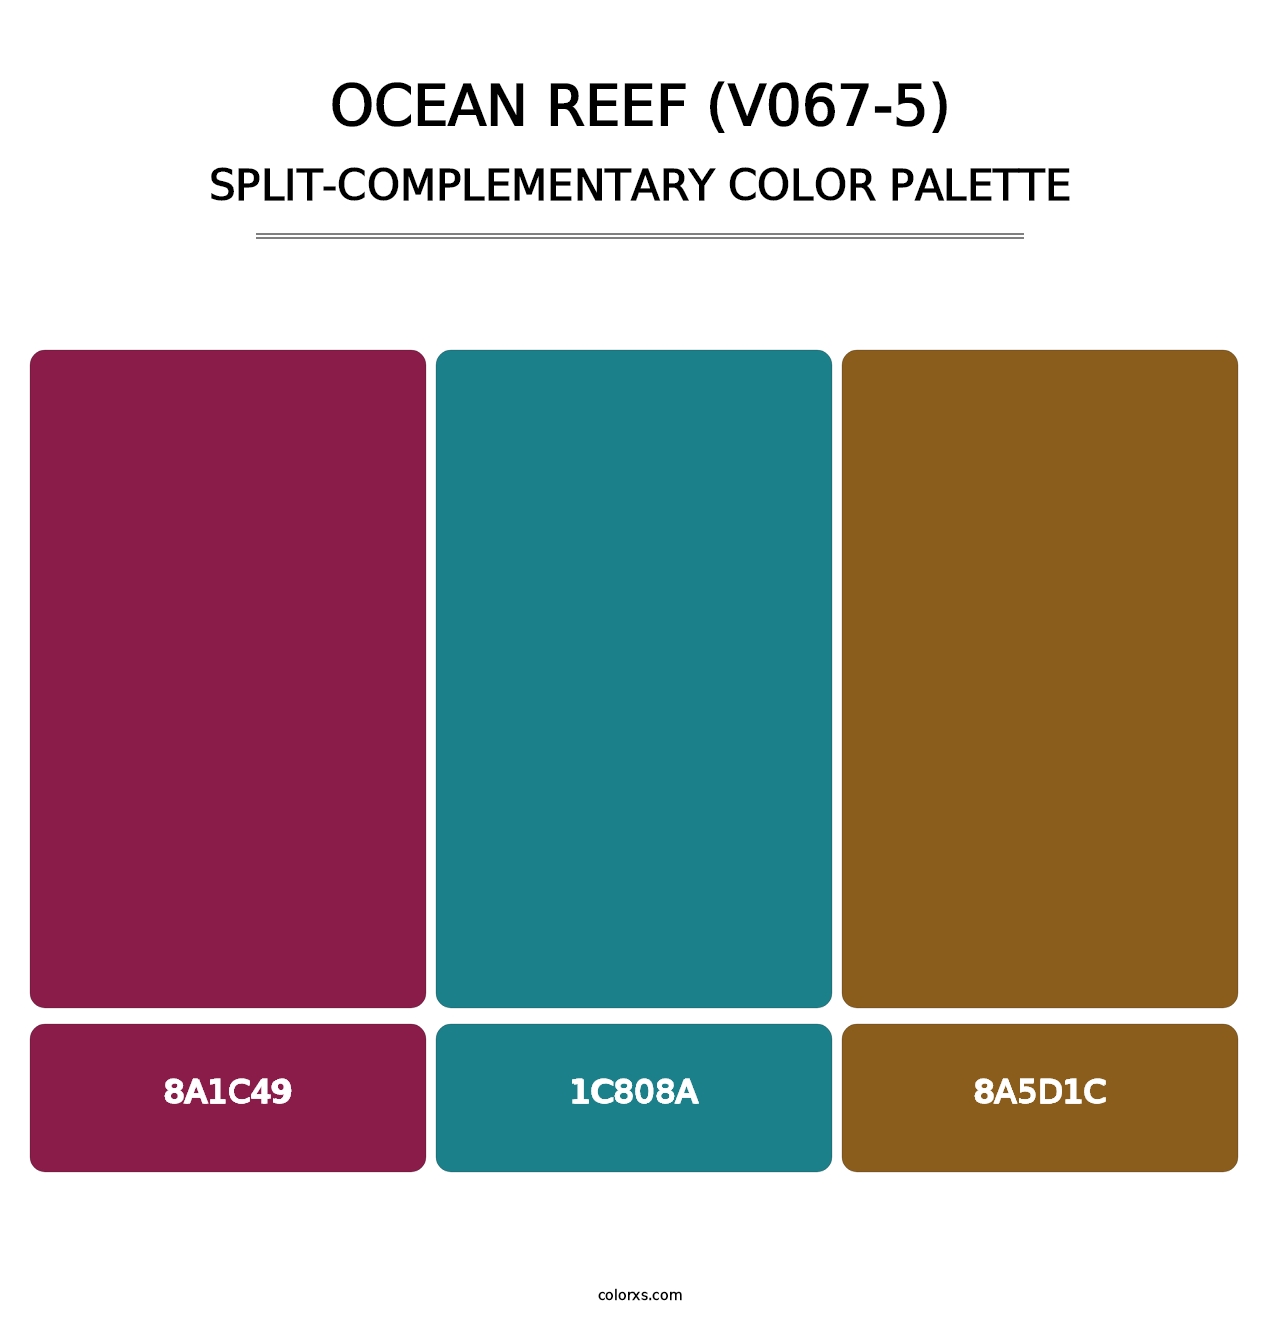 Ocean Reef (V067-5) - Split-Complementary Color Palette